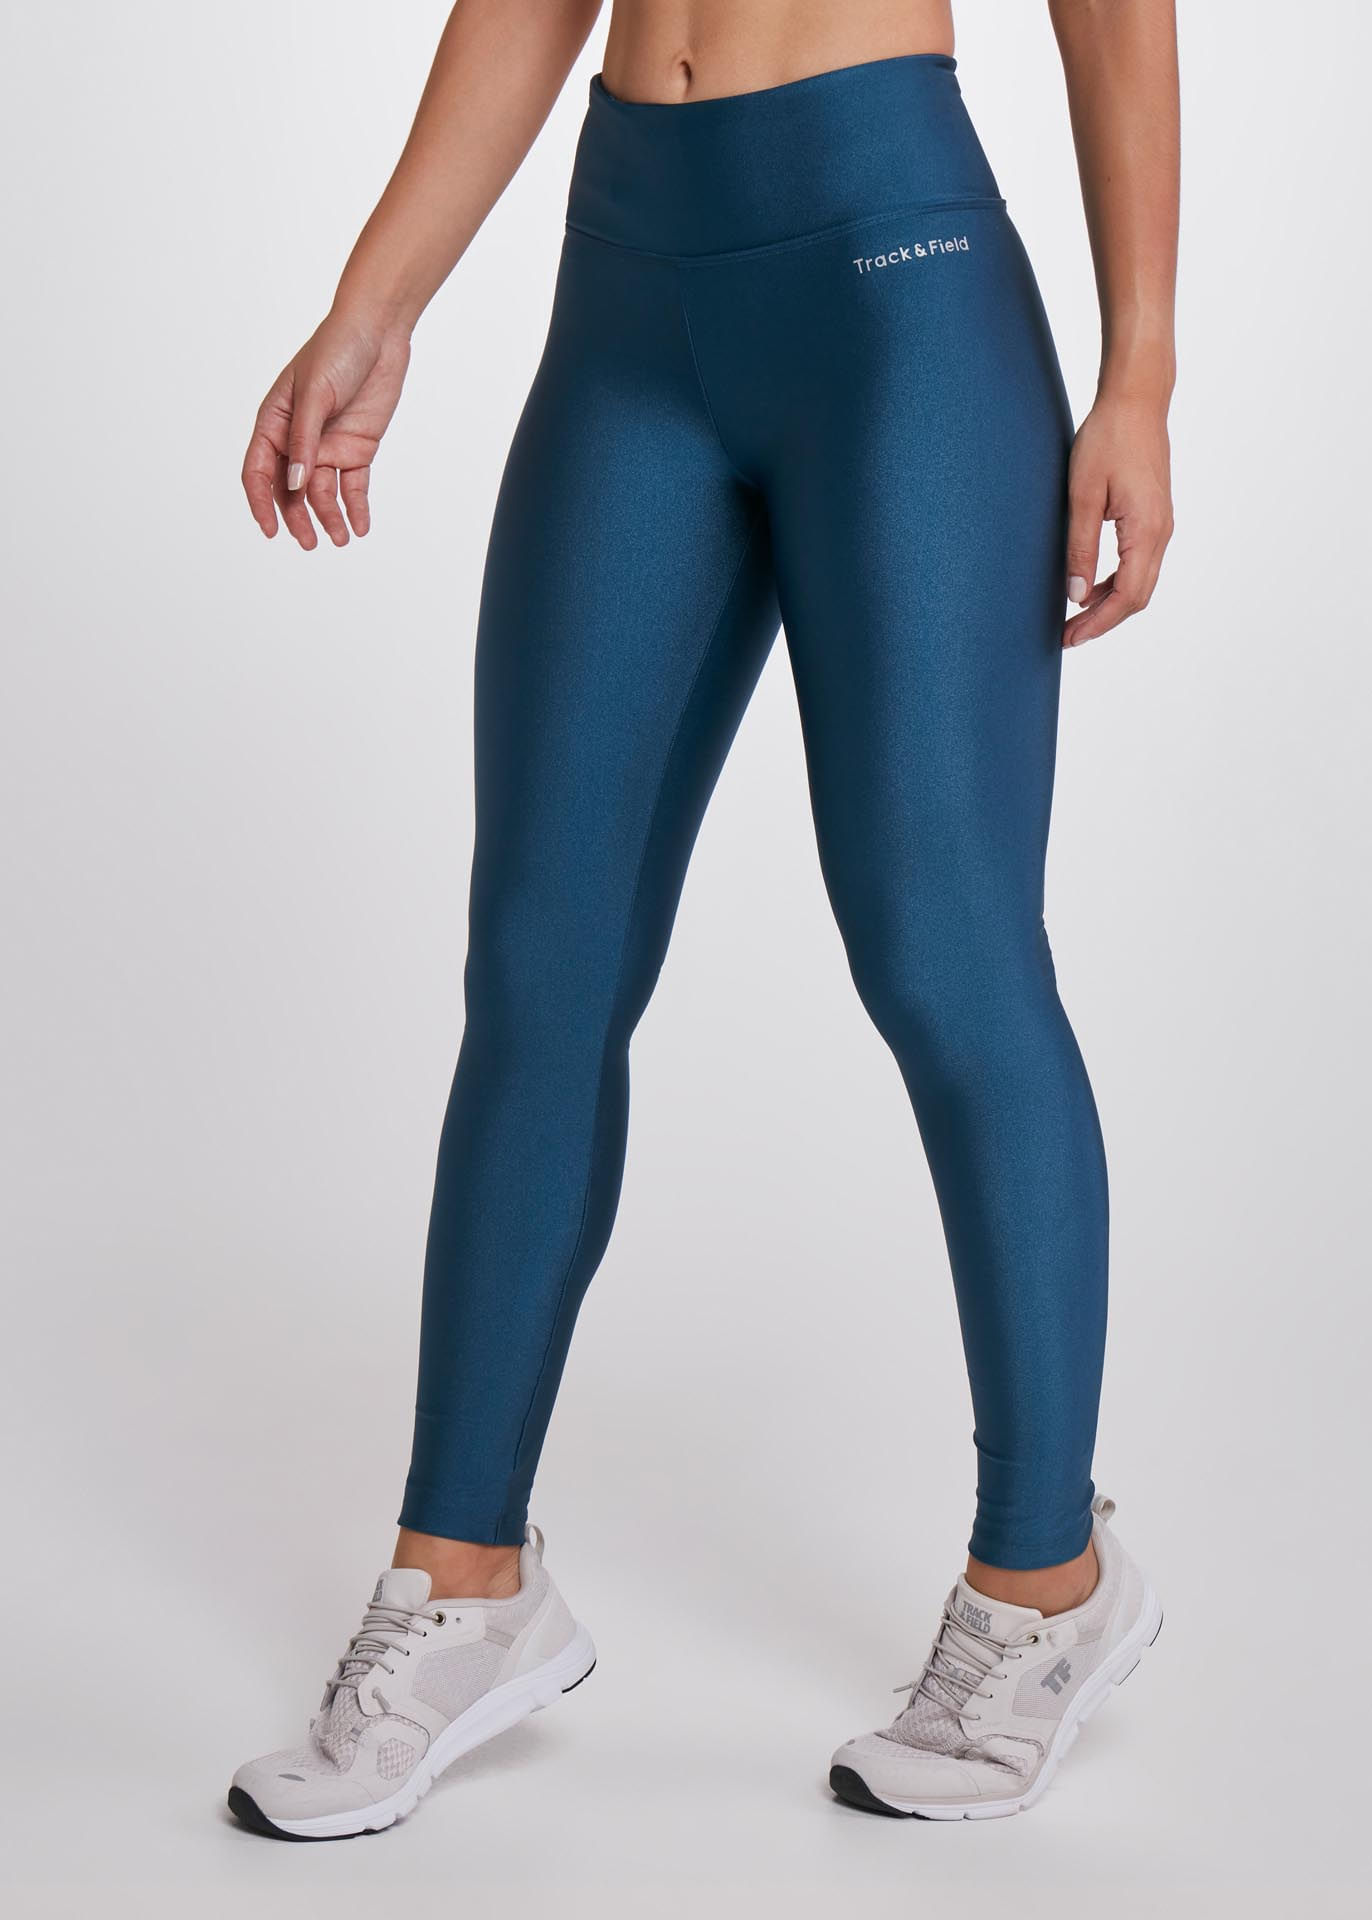 Calça legging feminina trilha azul noturno seu treino com estilo